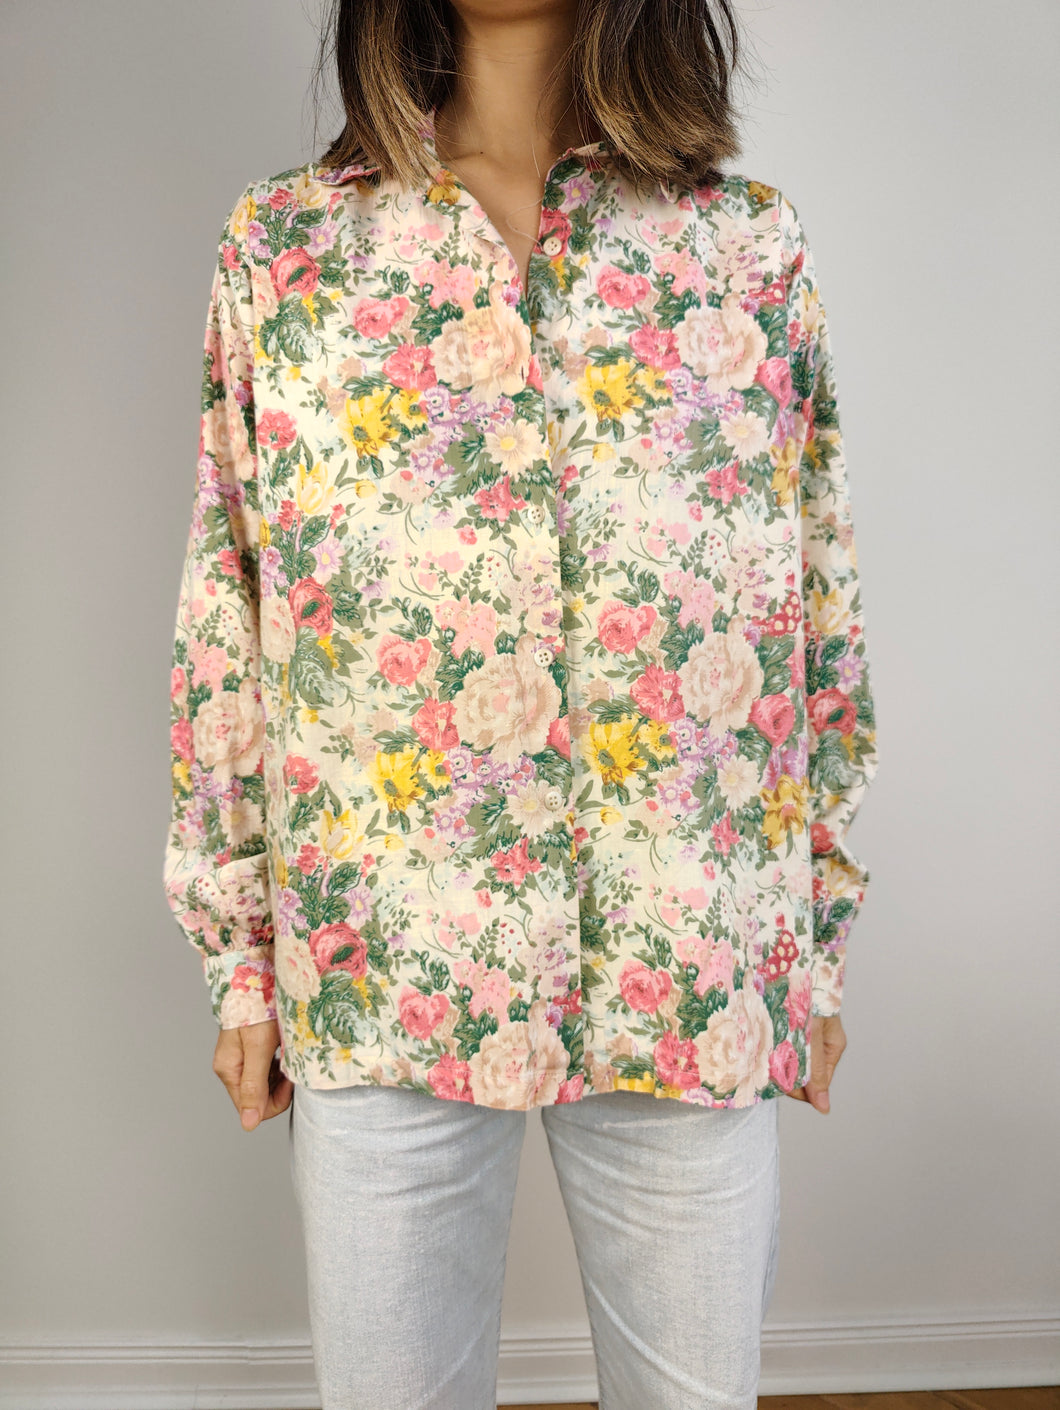 Die florale cremerosa Baumwollbluse | Vintage Lu-Lu Langarm-Shirt mit Blumendruckmuster M